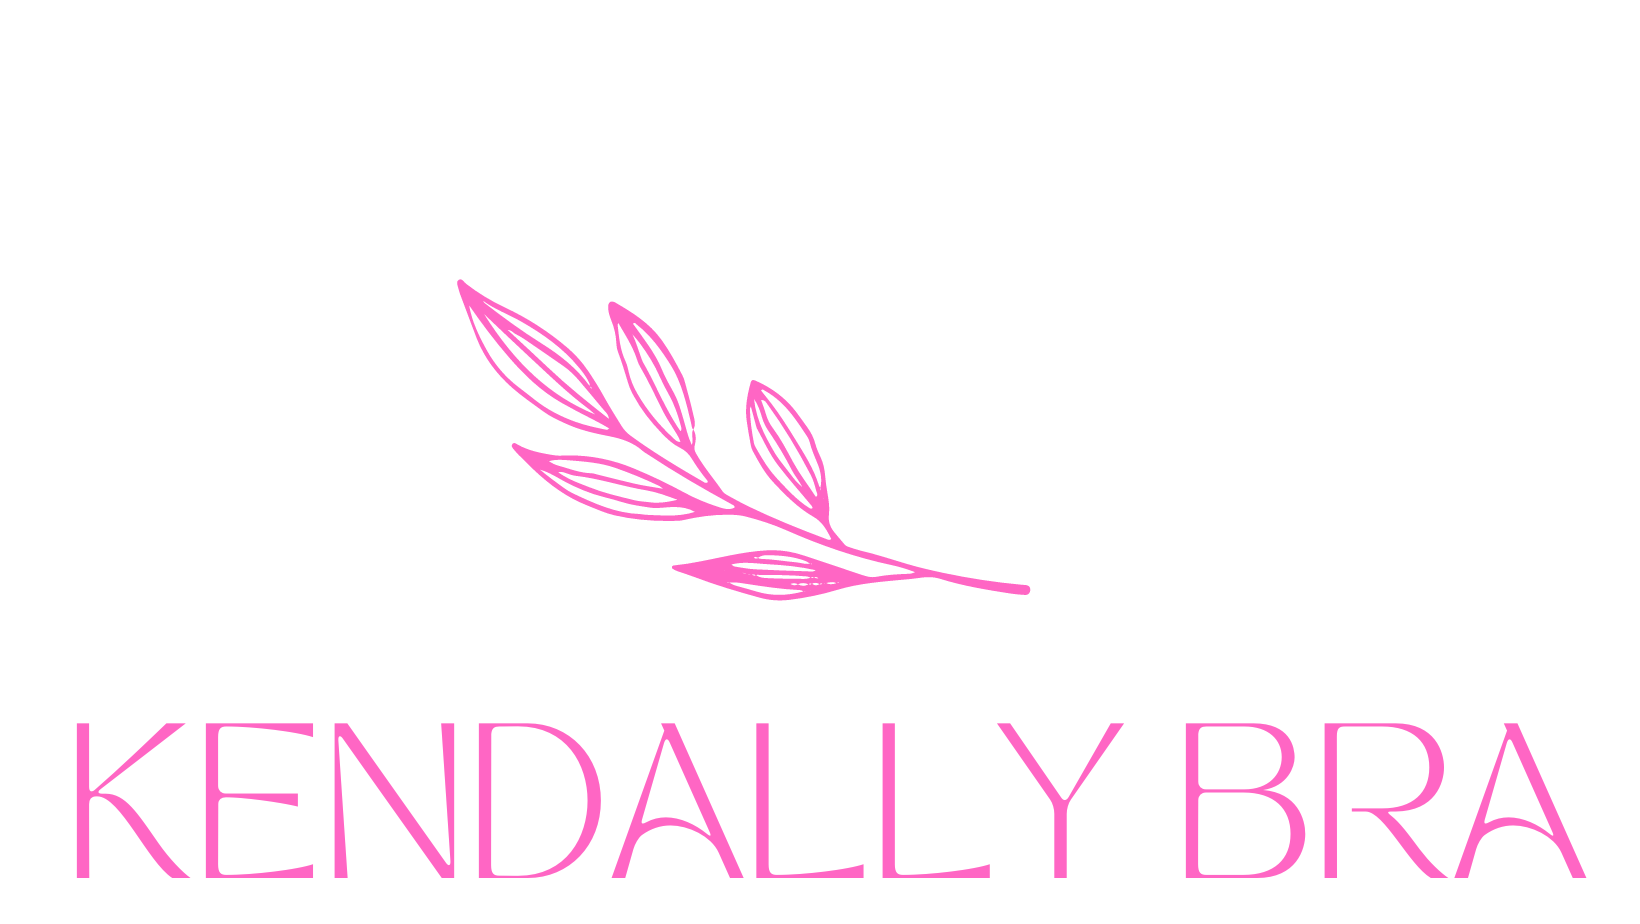 kendally bra (1880 × 704 px) (1640 × 924 px)